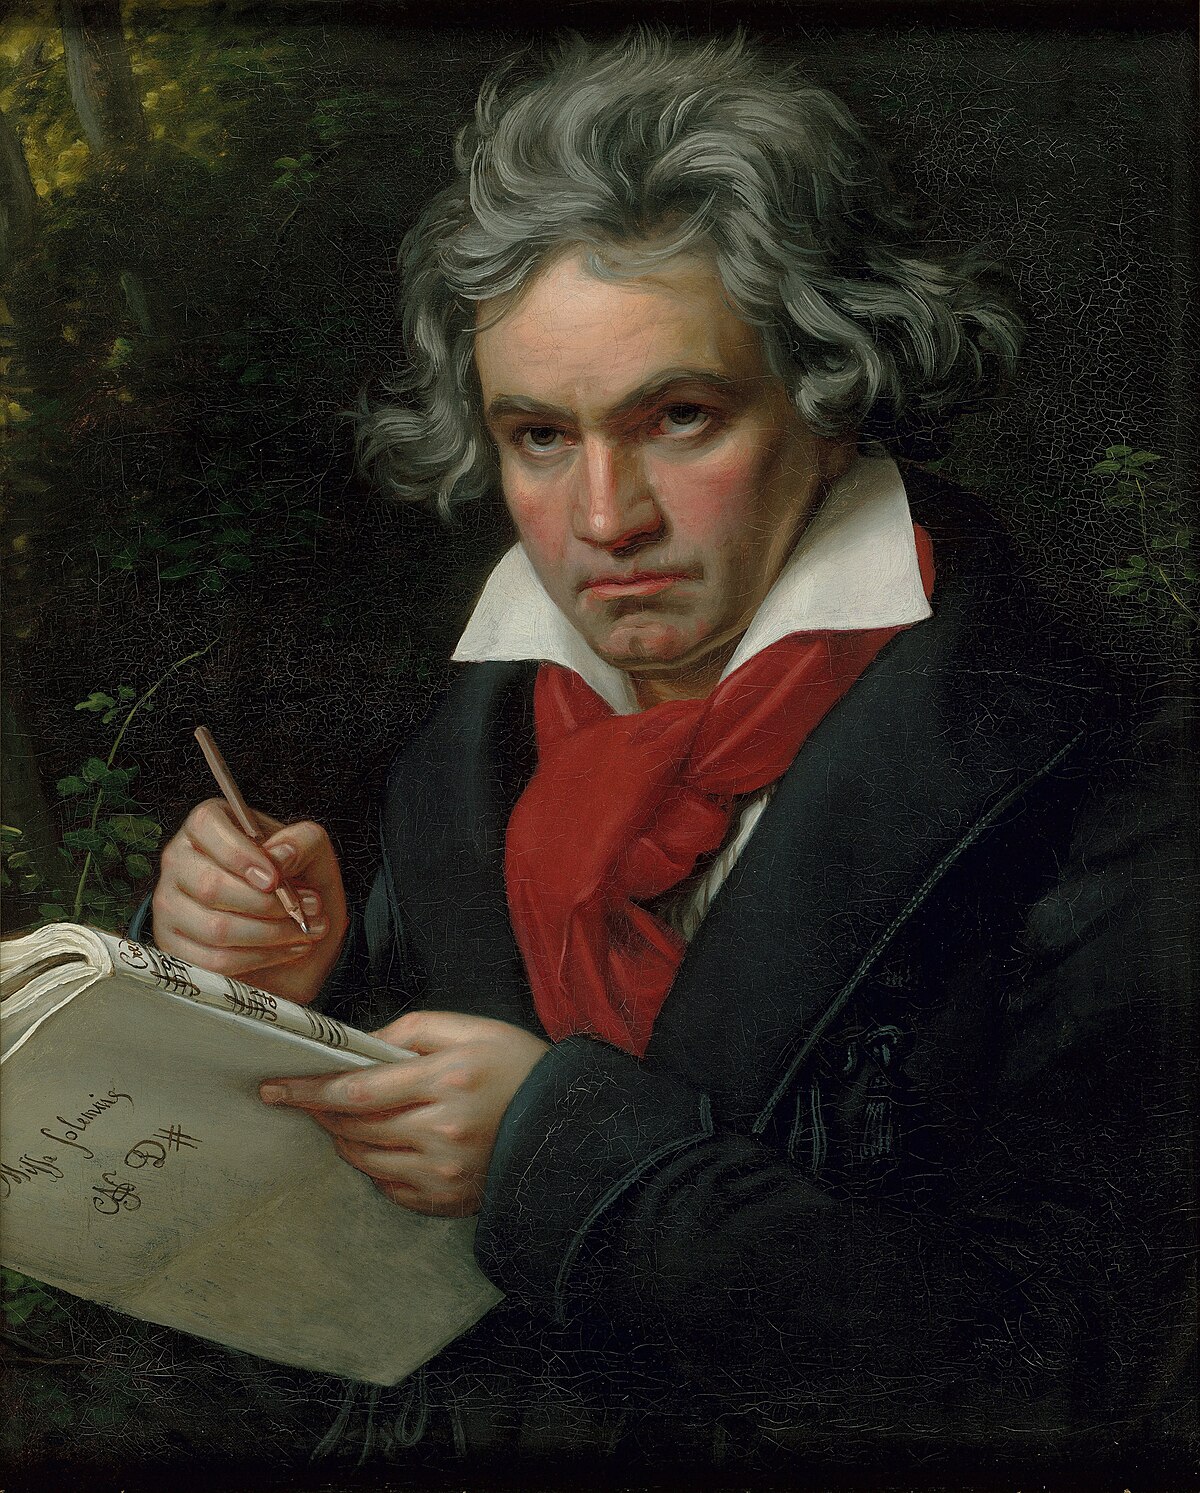  Ludwig van Beethoven, biografía y vida